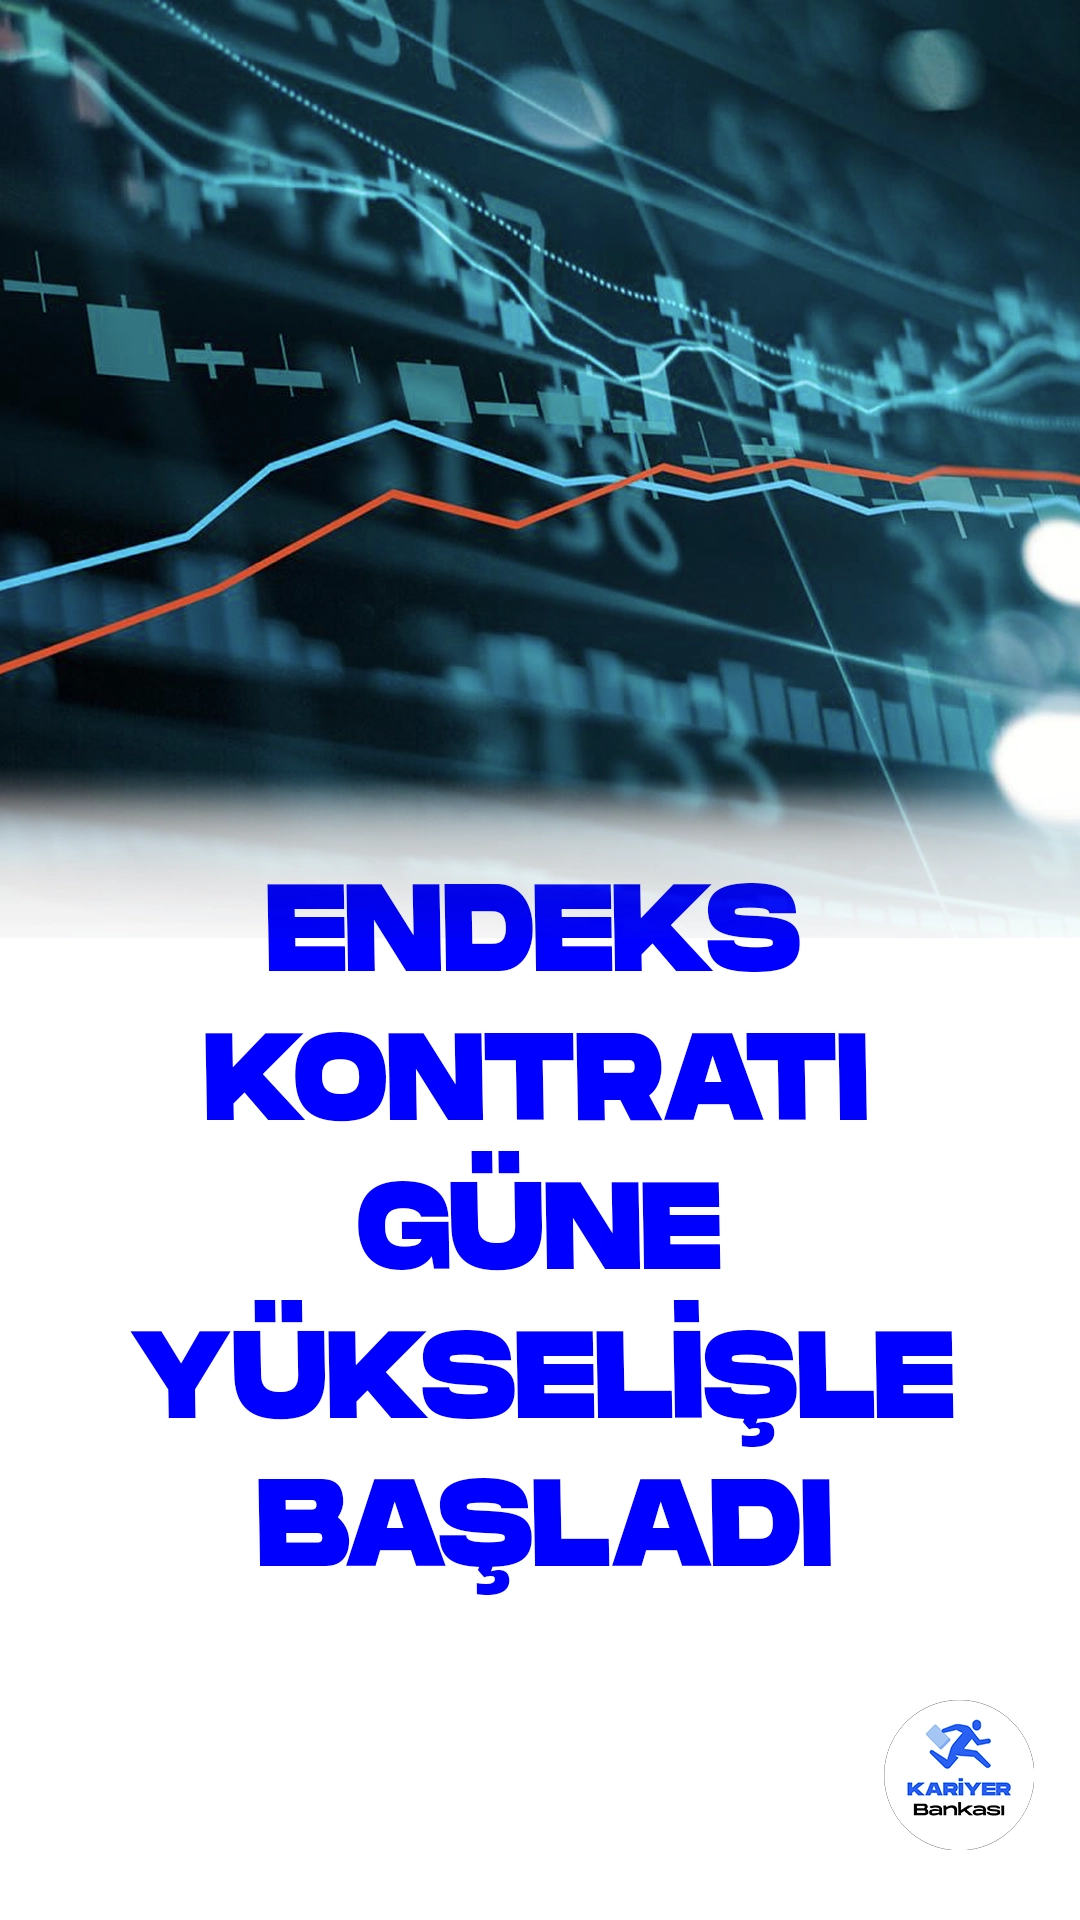 BIST 30 Kontratı Güne Artışla Başladı.Borsa İstanbul Vadeli İşlem ve Opsiyon Piyasası'nda, ağustos vadeli BIST 30 endeksine dayalı kontrat, güne yüzde 0,2 artışla 8.766,25 puandan başladı.